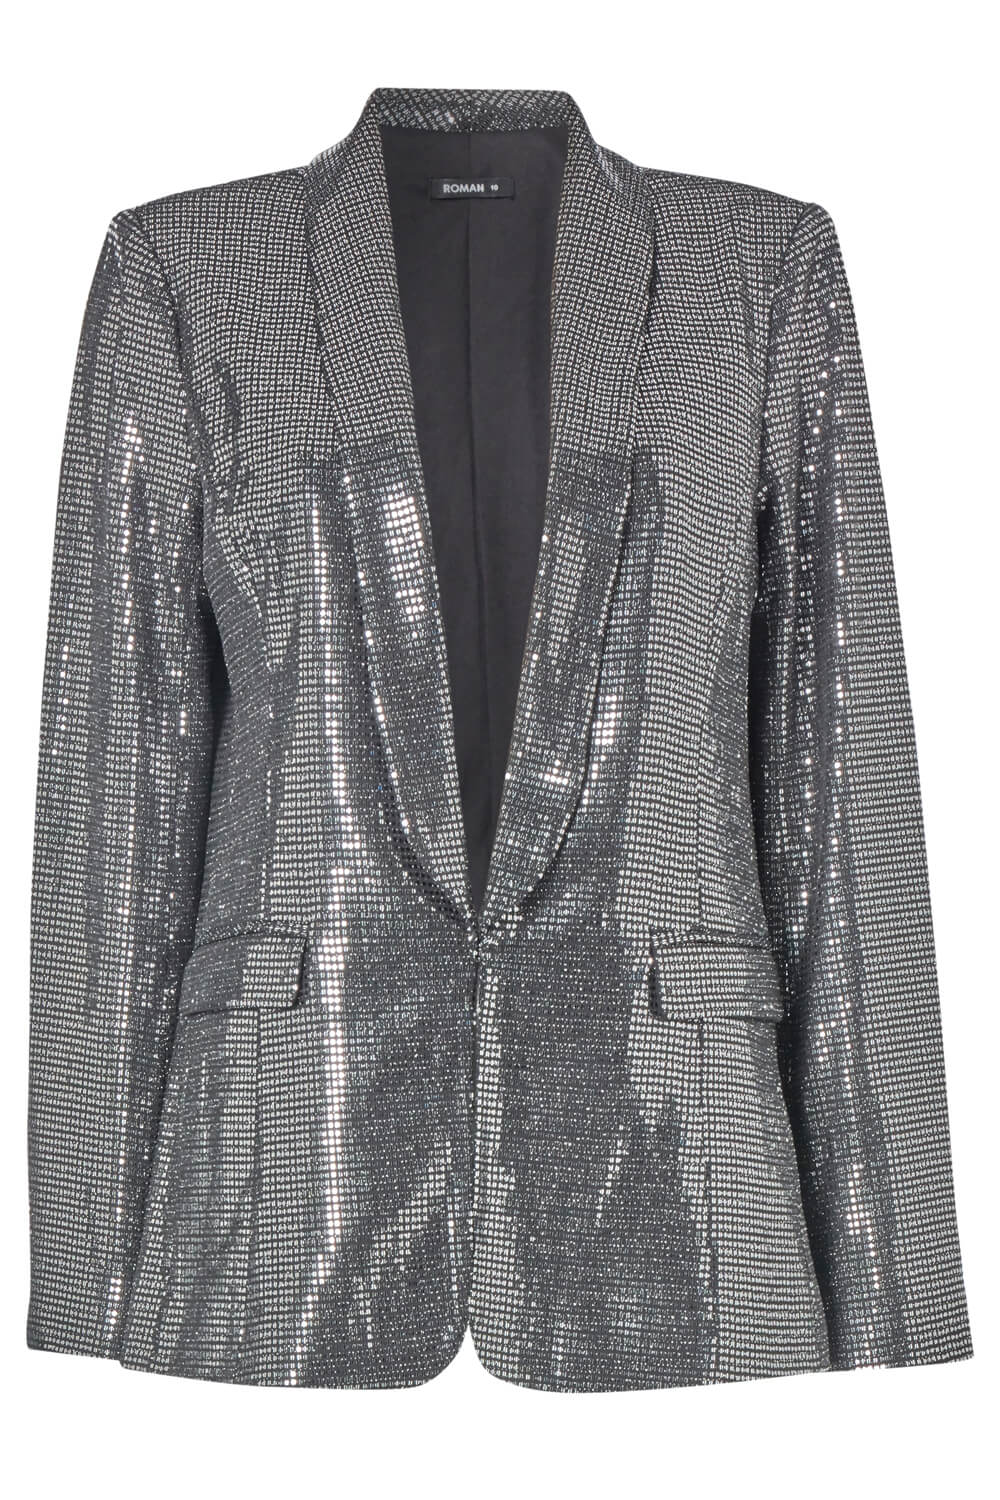 Silver Sparkle Embellished Blazer Jacket , Image 5 of 5